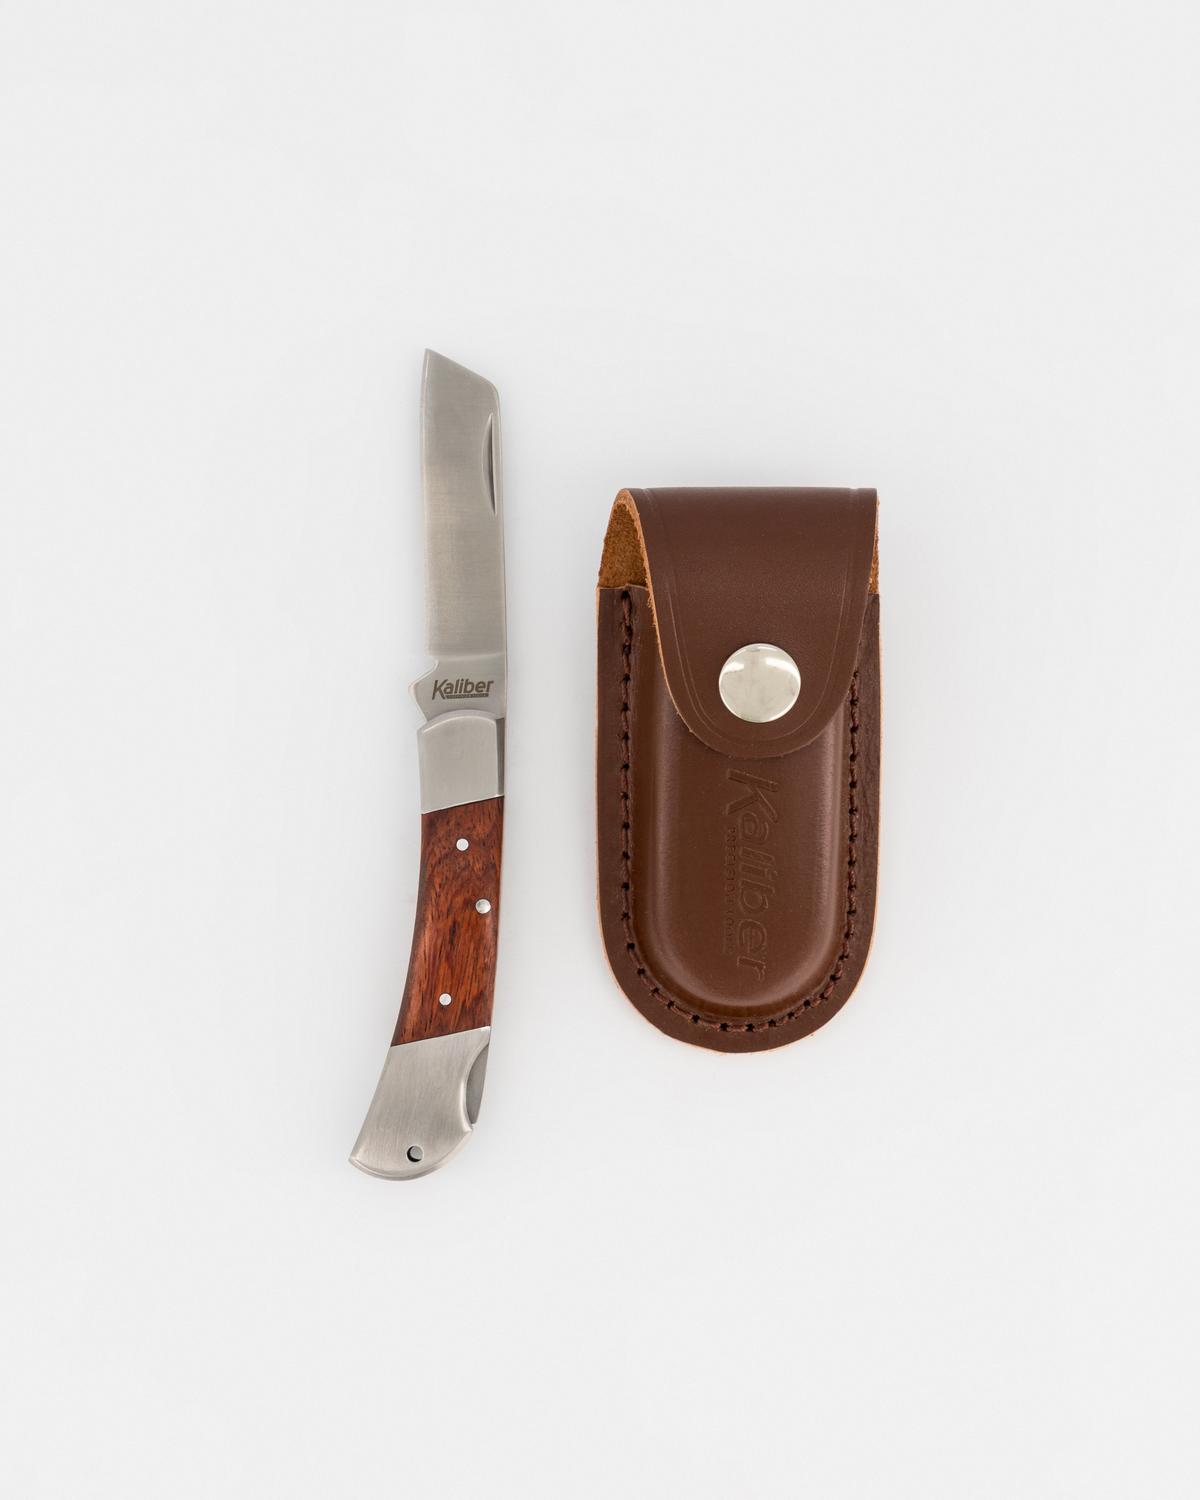 Kaliber Steenbok Folding Knife -  Brown